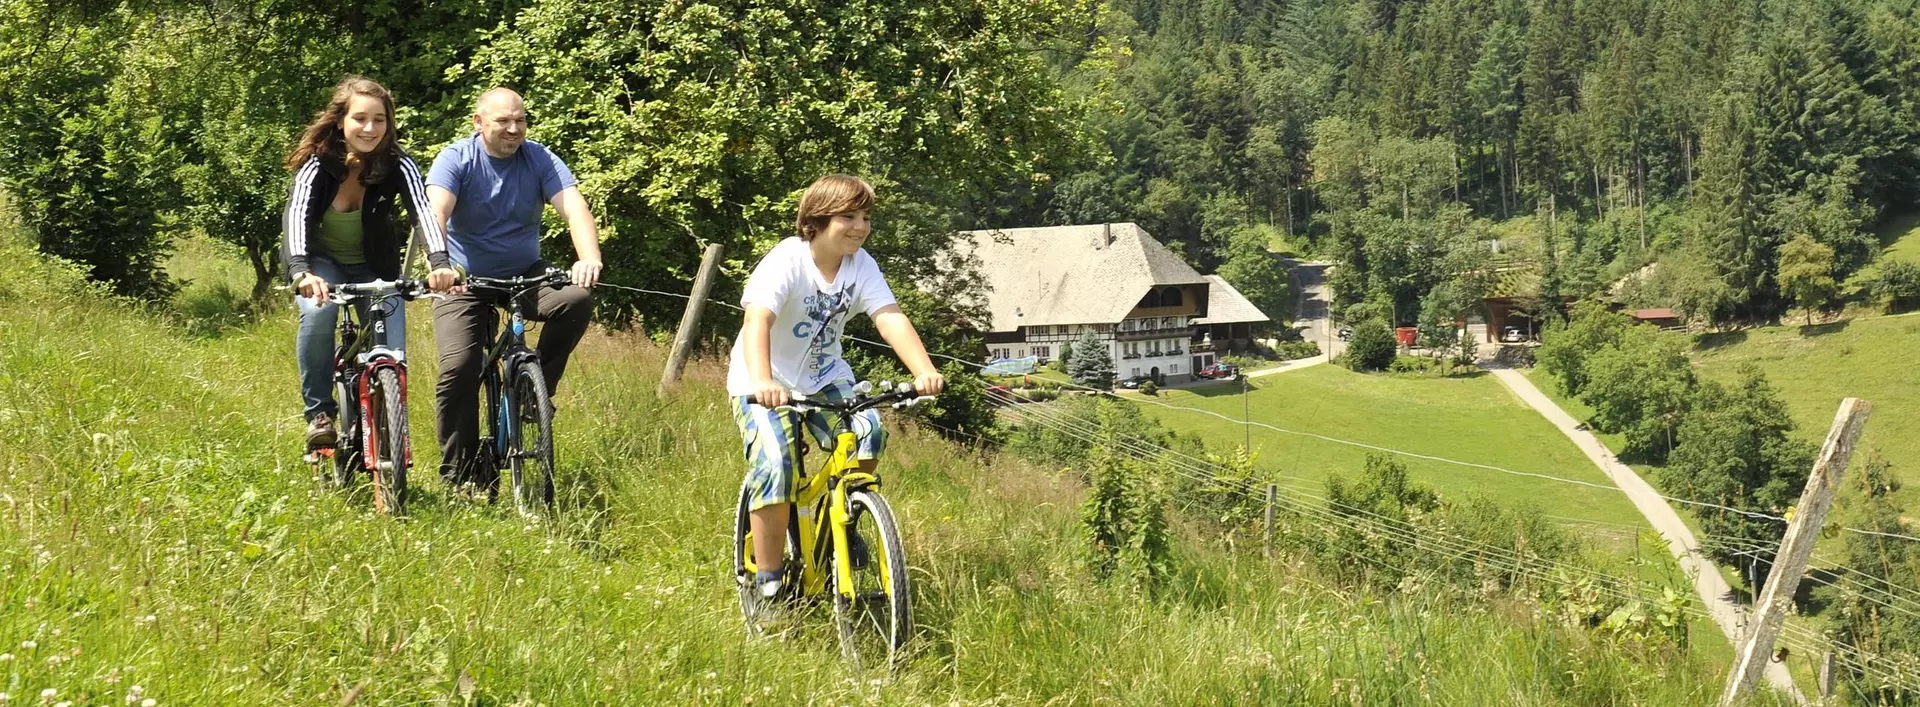 im Urlaub im Schwarzwald eine Radtour mit der ganzen Familie machen